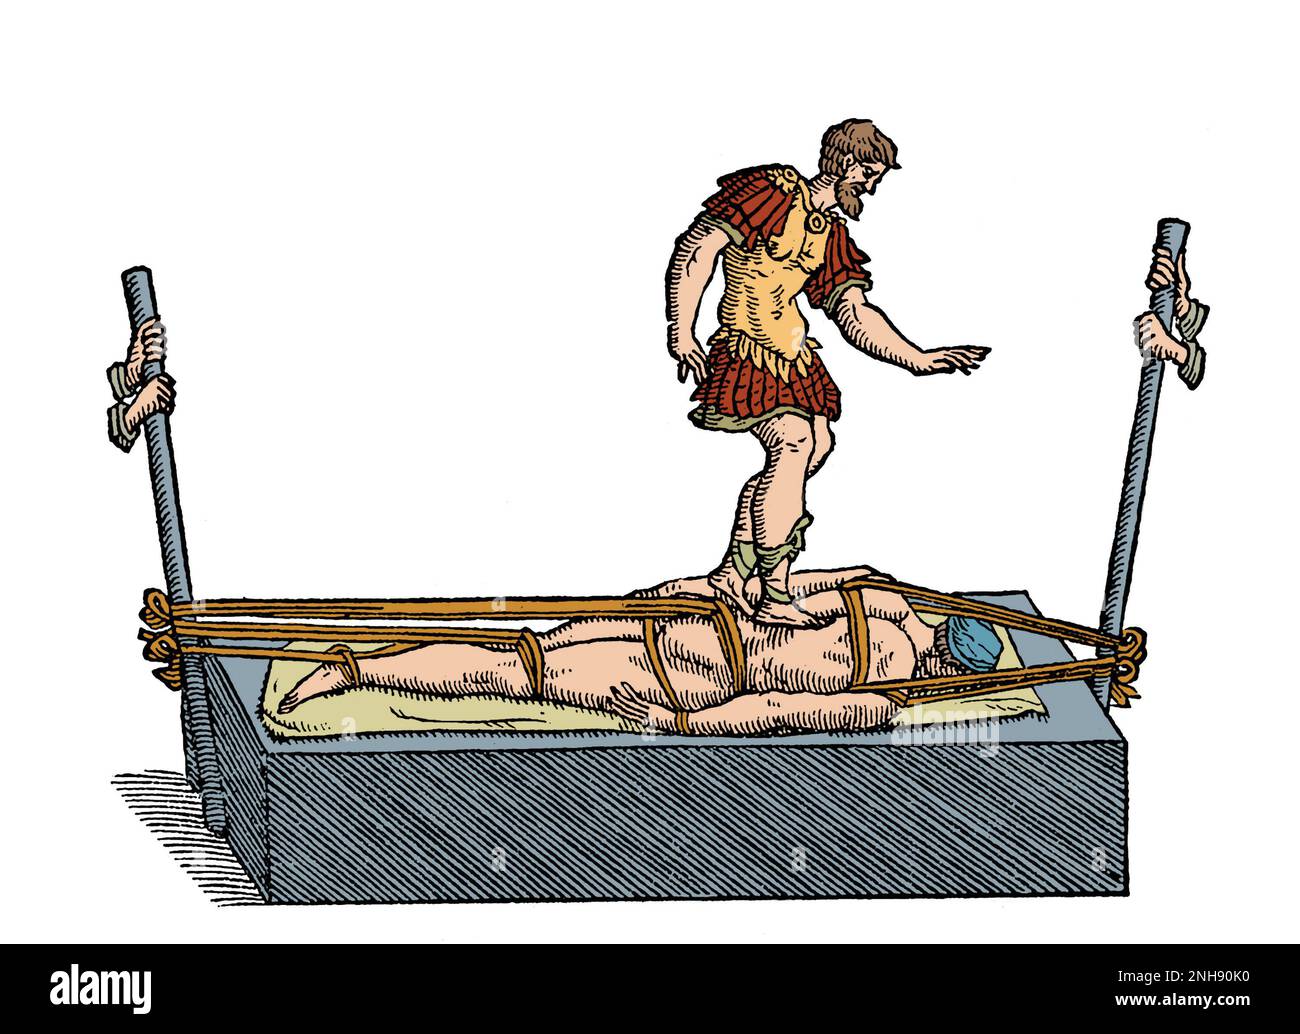 Galen-Methode zur Korrektur einer Wirbelsäulendeformität mit einem Gerät ähnlich dem Hippokratischen Brett, das Druck auf den Rücken ausübt. Opera Omnia, 1565. Galen (129 - ca. 216) war ein griechischer Arzt, Chirurg und Philosoph im Römischen Reich. Gefärbt. Stockfoto